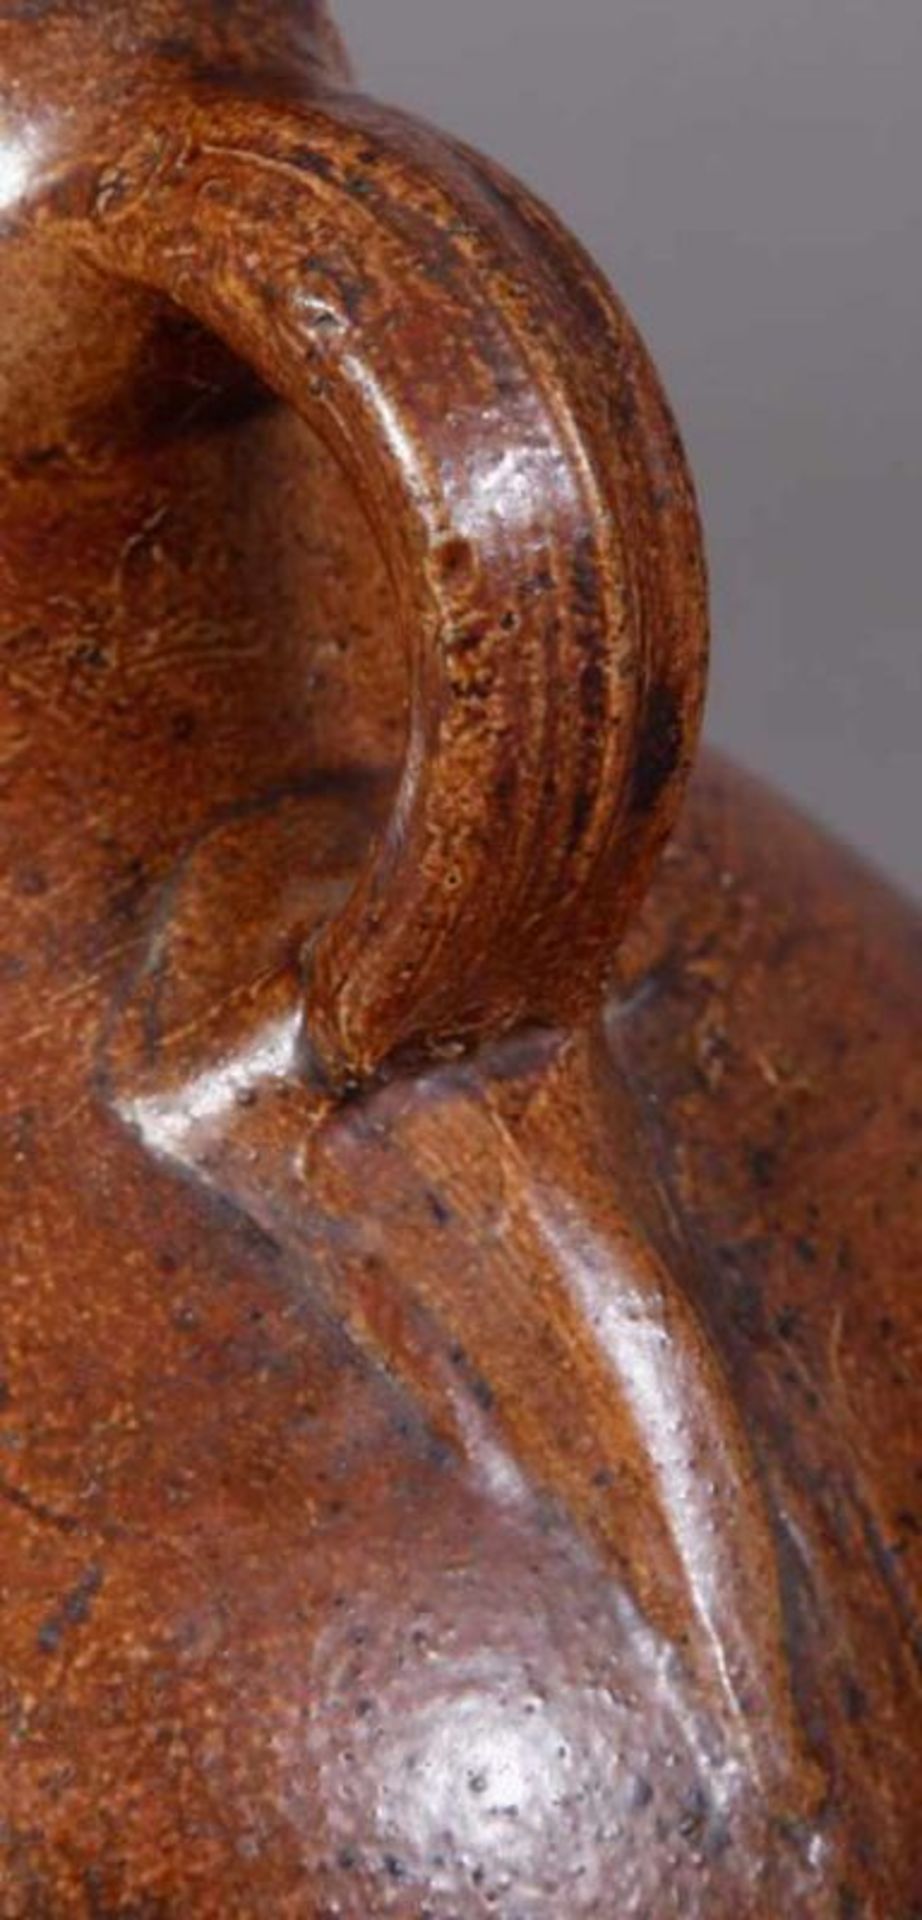 Antiker BARTMANN-KRUG, 18. Jhd., braunes salzglasiertes Steinzeug, Höhe 21 cm, Durchmesser 15 cm. - Image 5 of 6